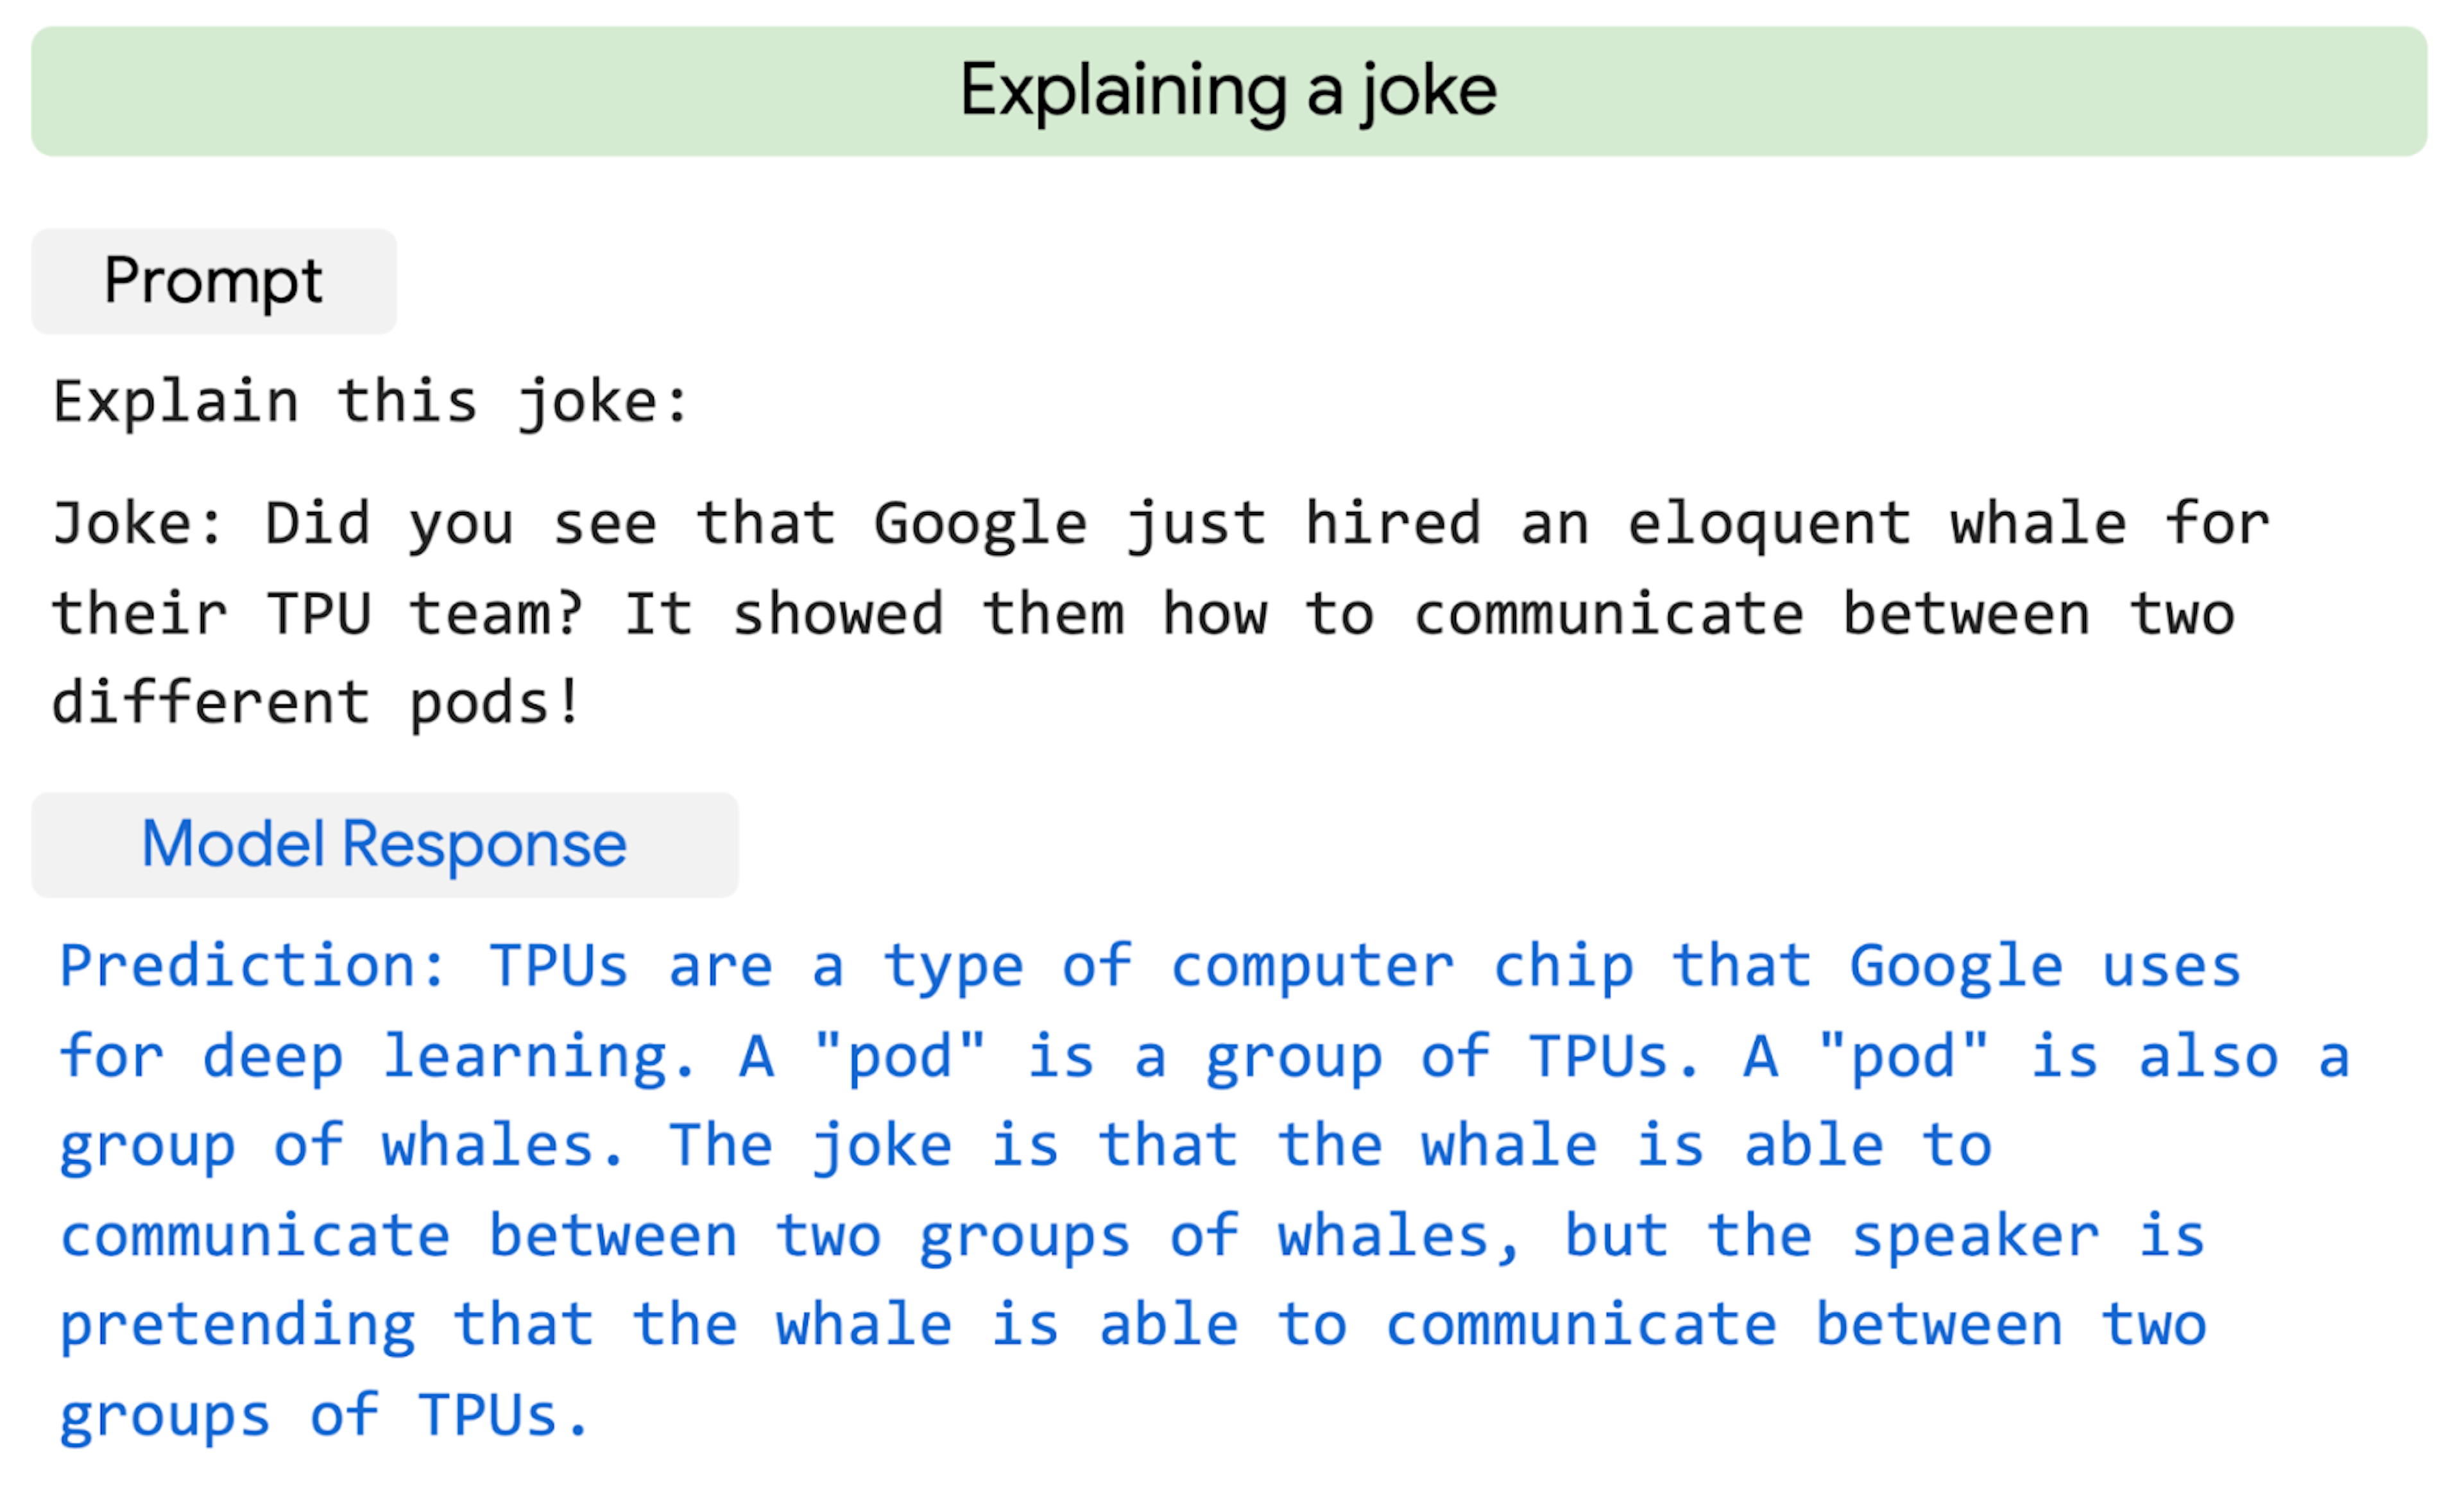 PaLM do Google explica por que uma piada é engraçada